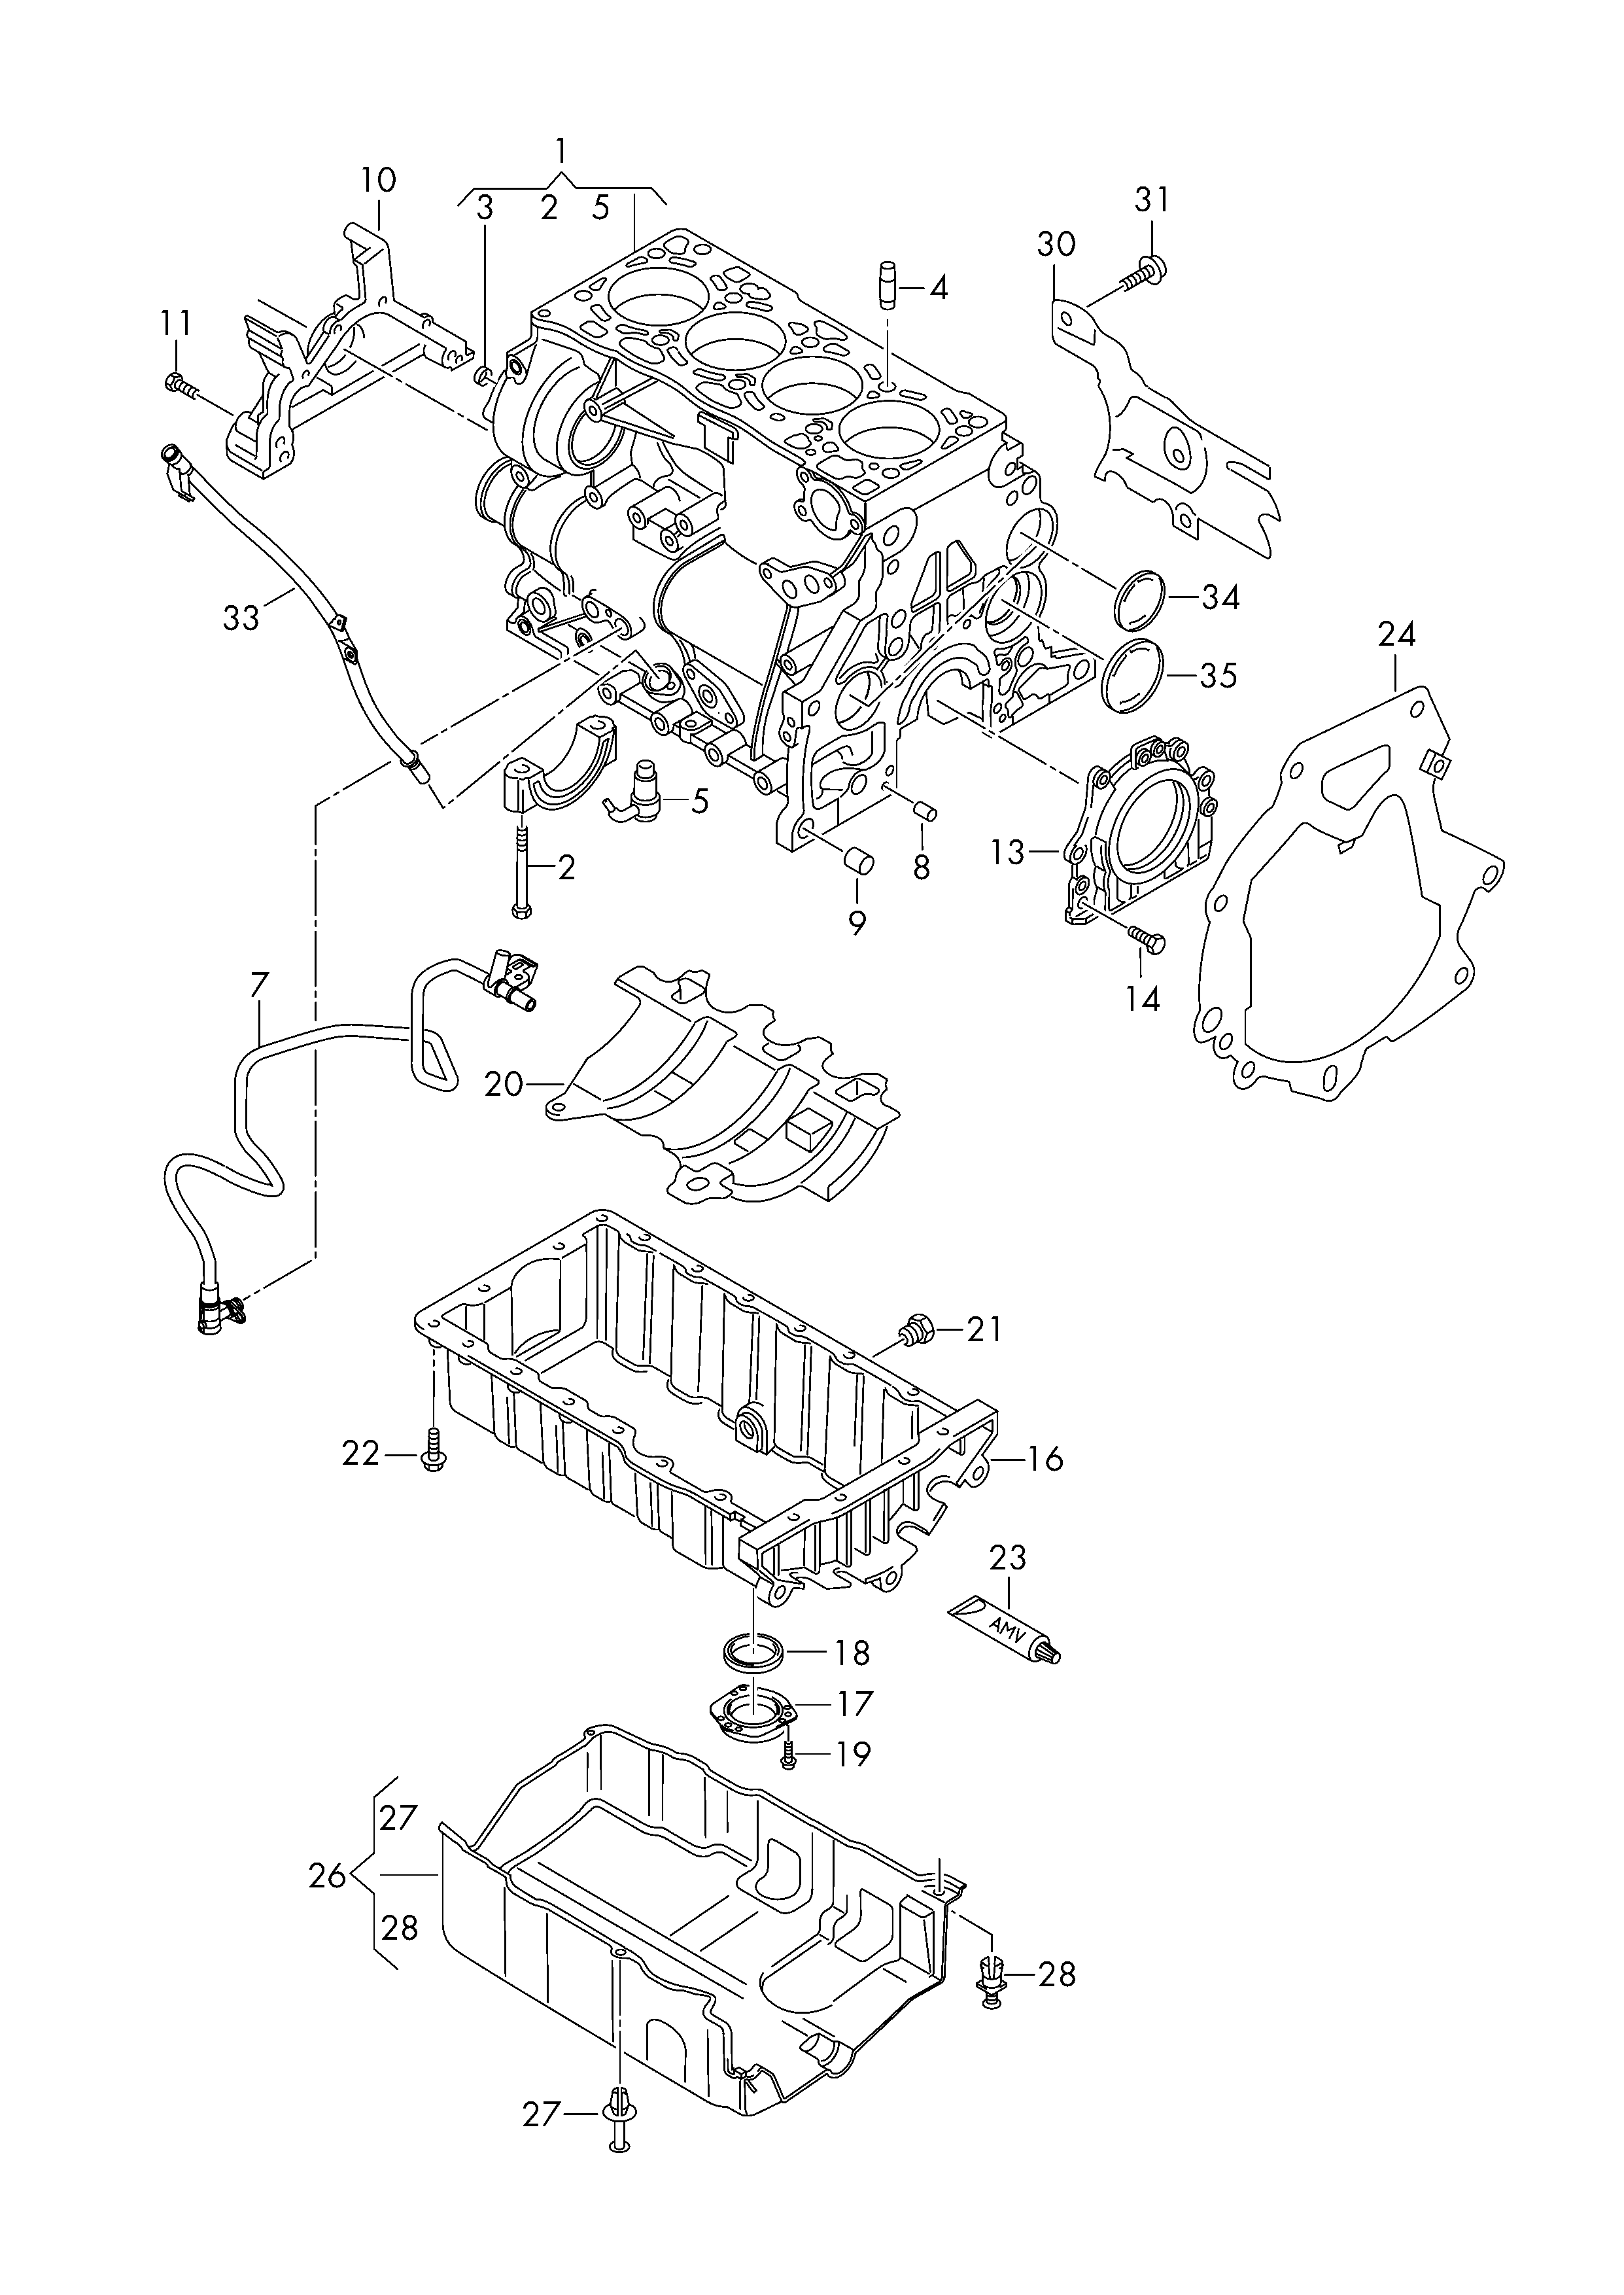 Carter-moteurcarter dhuile 2,0l - CC - cc